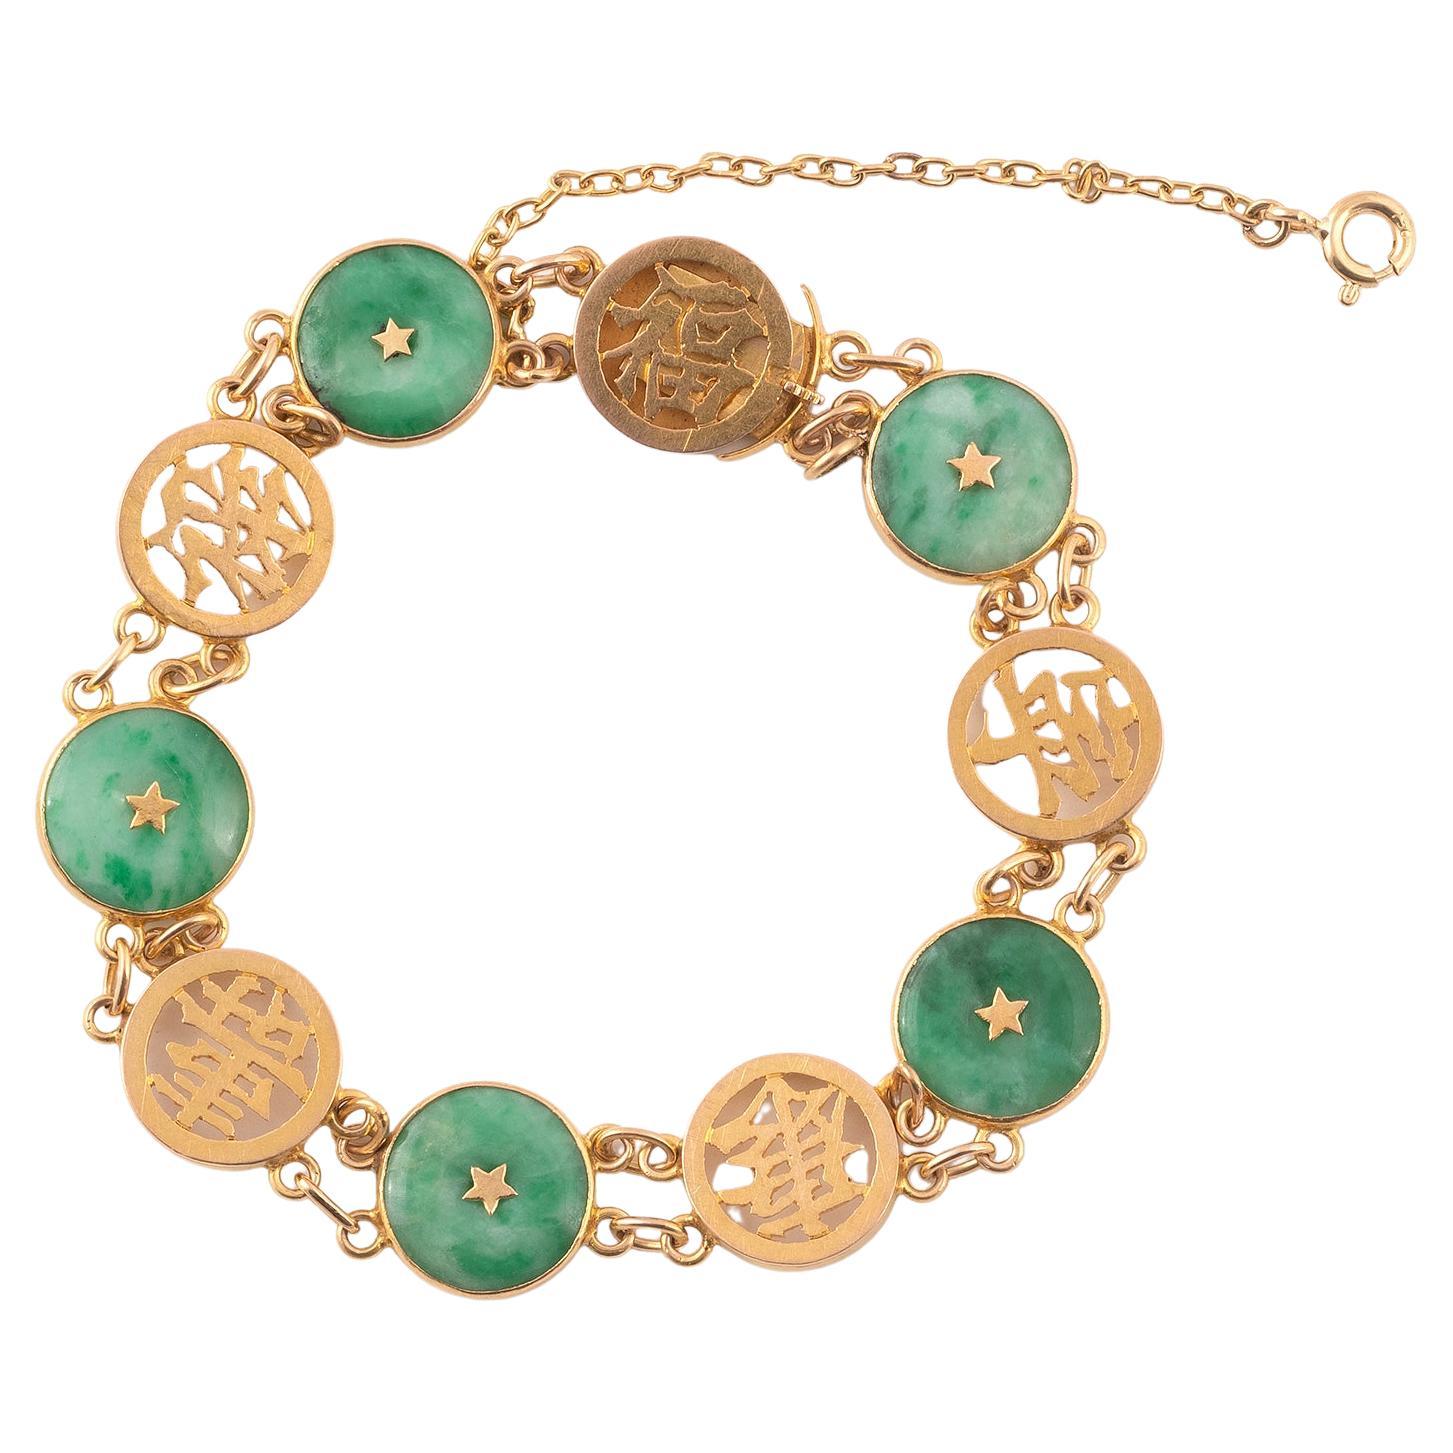 Antique Jade Gold Bracelet - 4 For Sale on 1stDibs